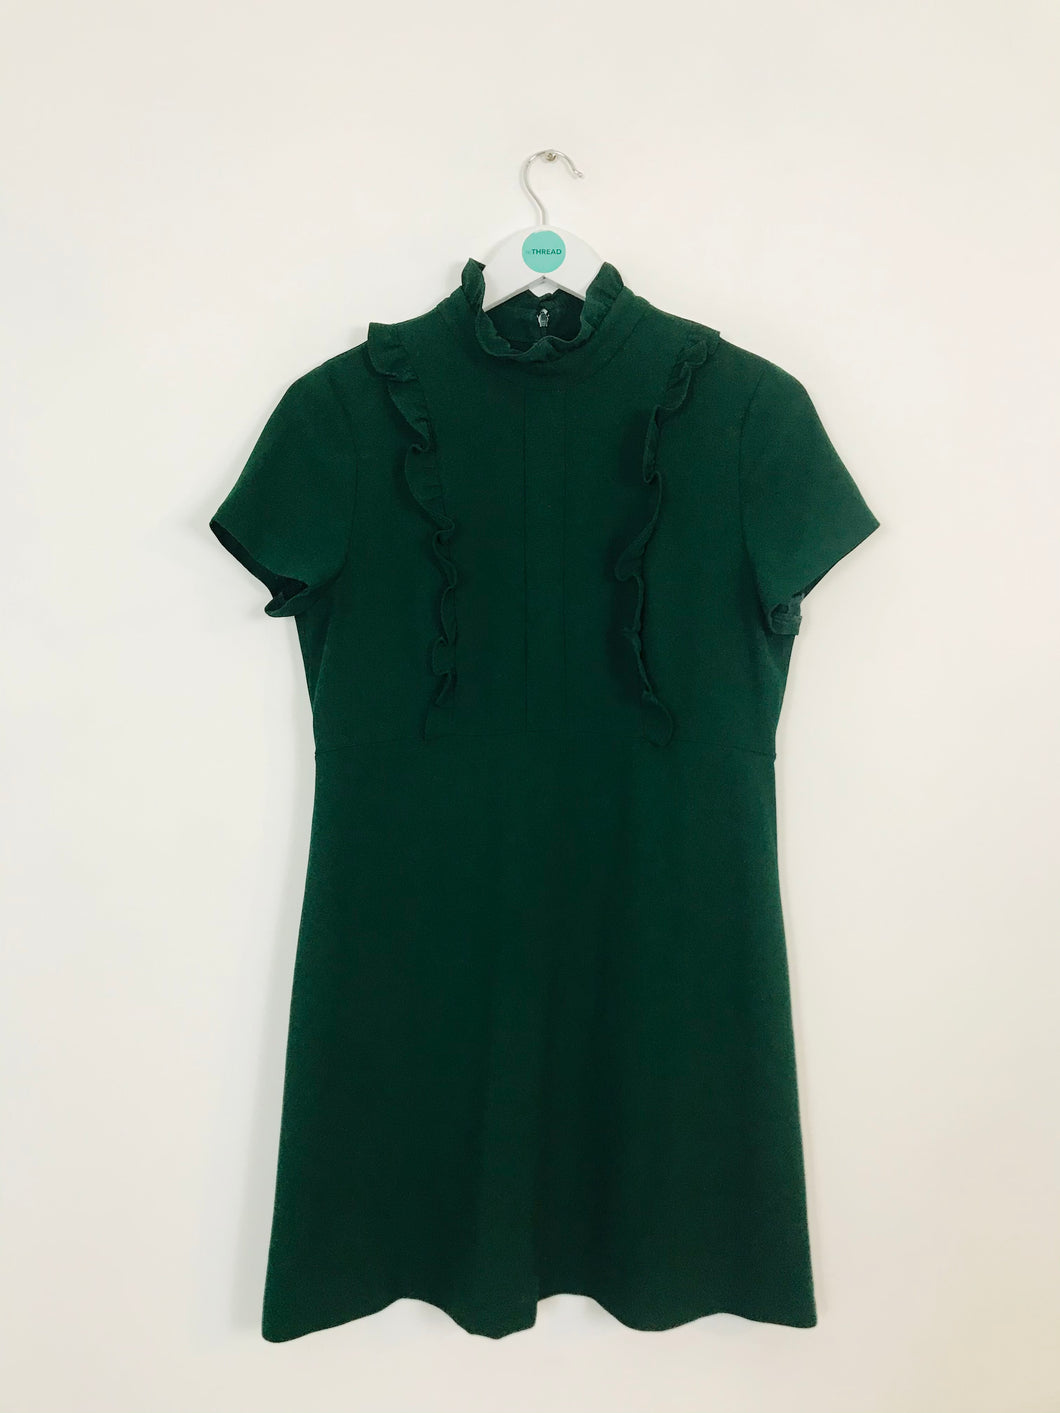 Zara Woman Women’s Ruffle Sheath Dress | M UK12 | Green